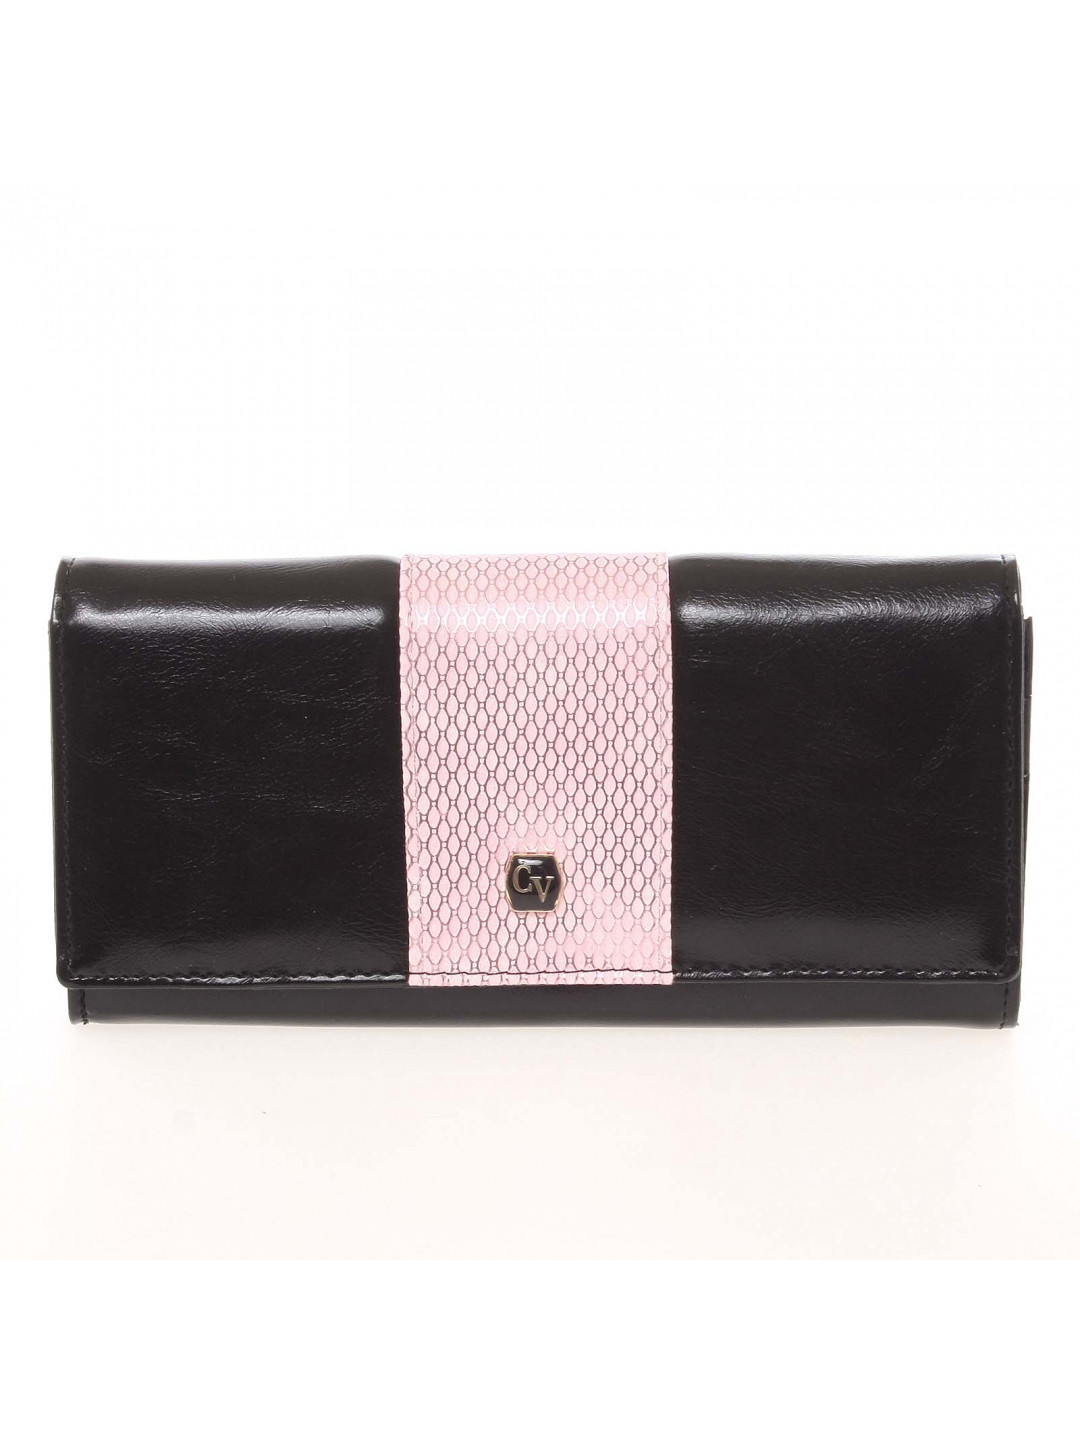 Originální dámská peněženka Cavaldi 4T růžová